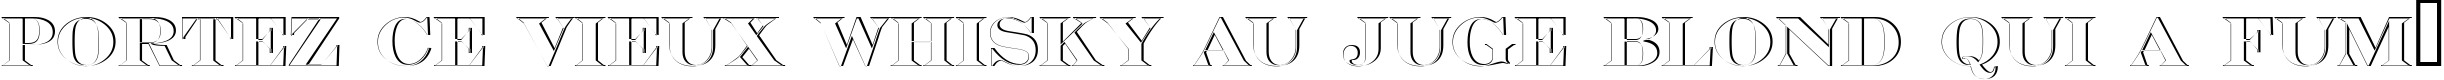 Пример написания шрифтом a_SeriferTitulSh текста на французском